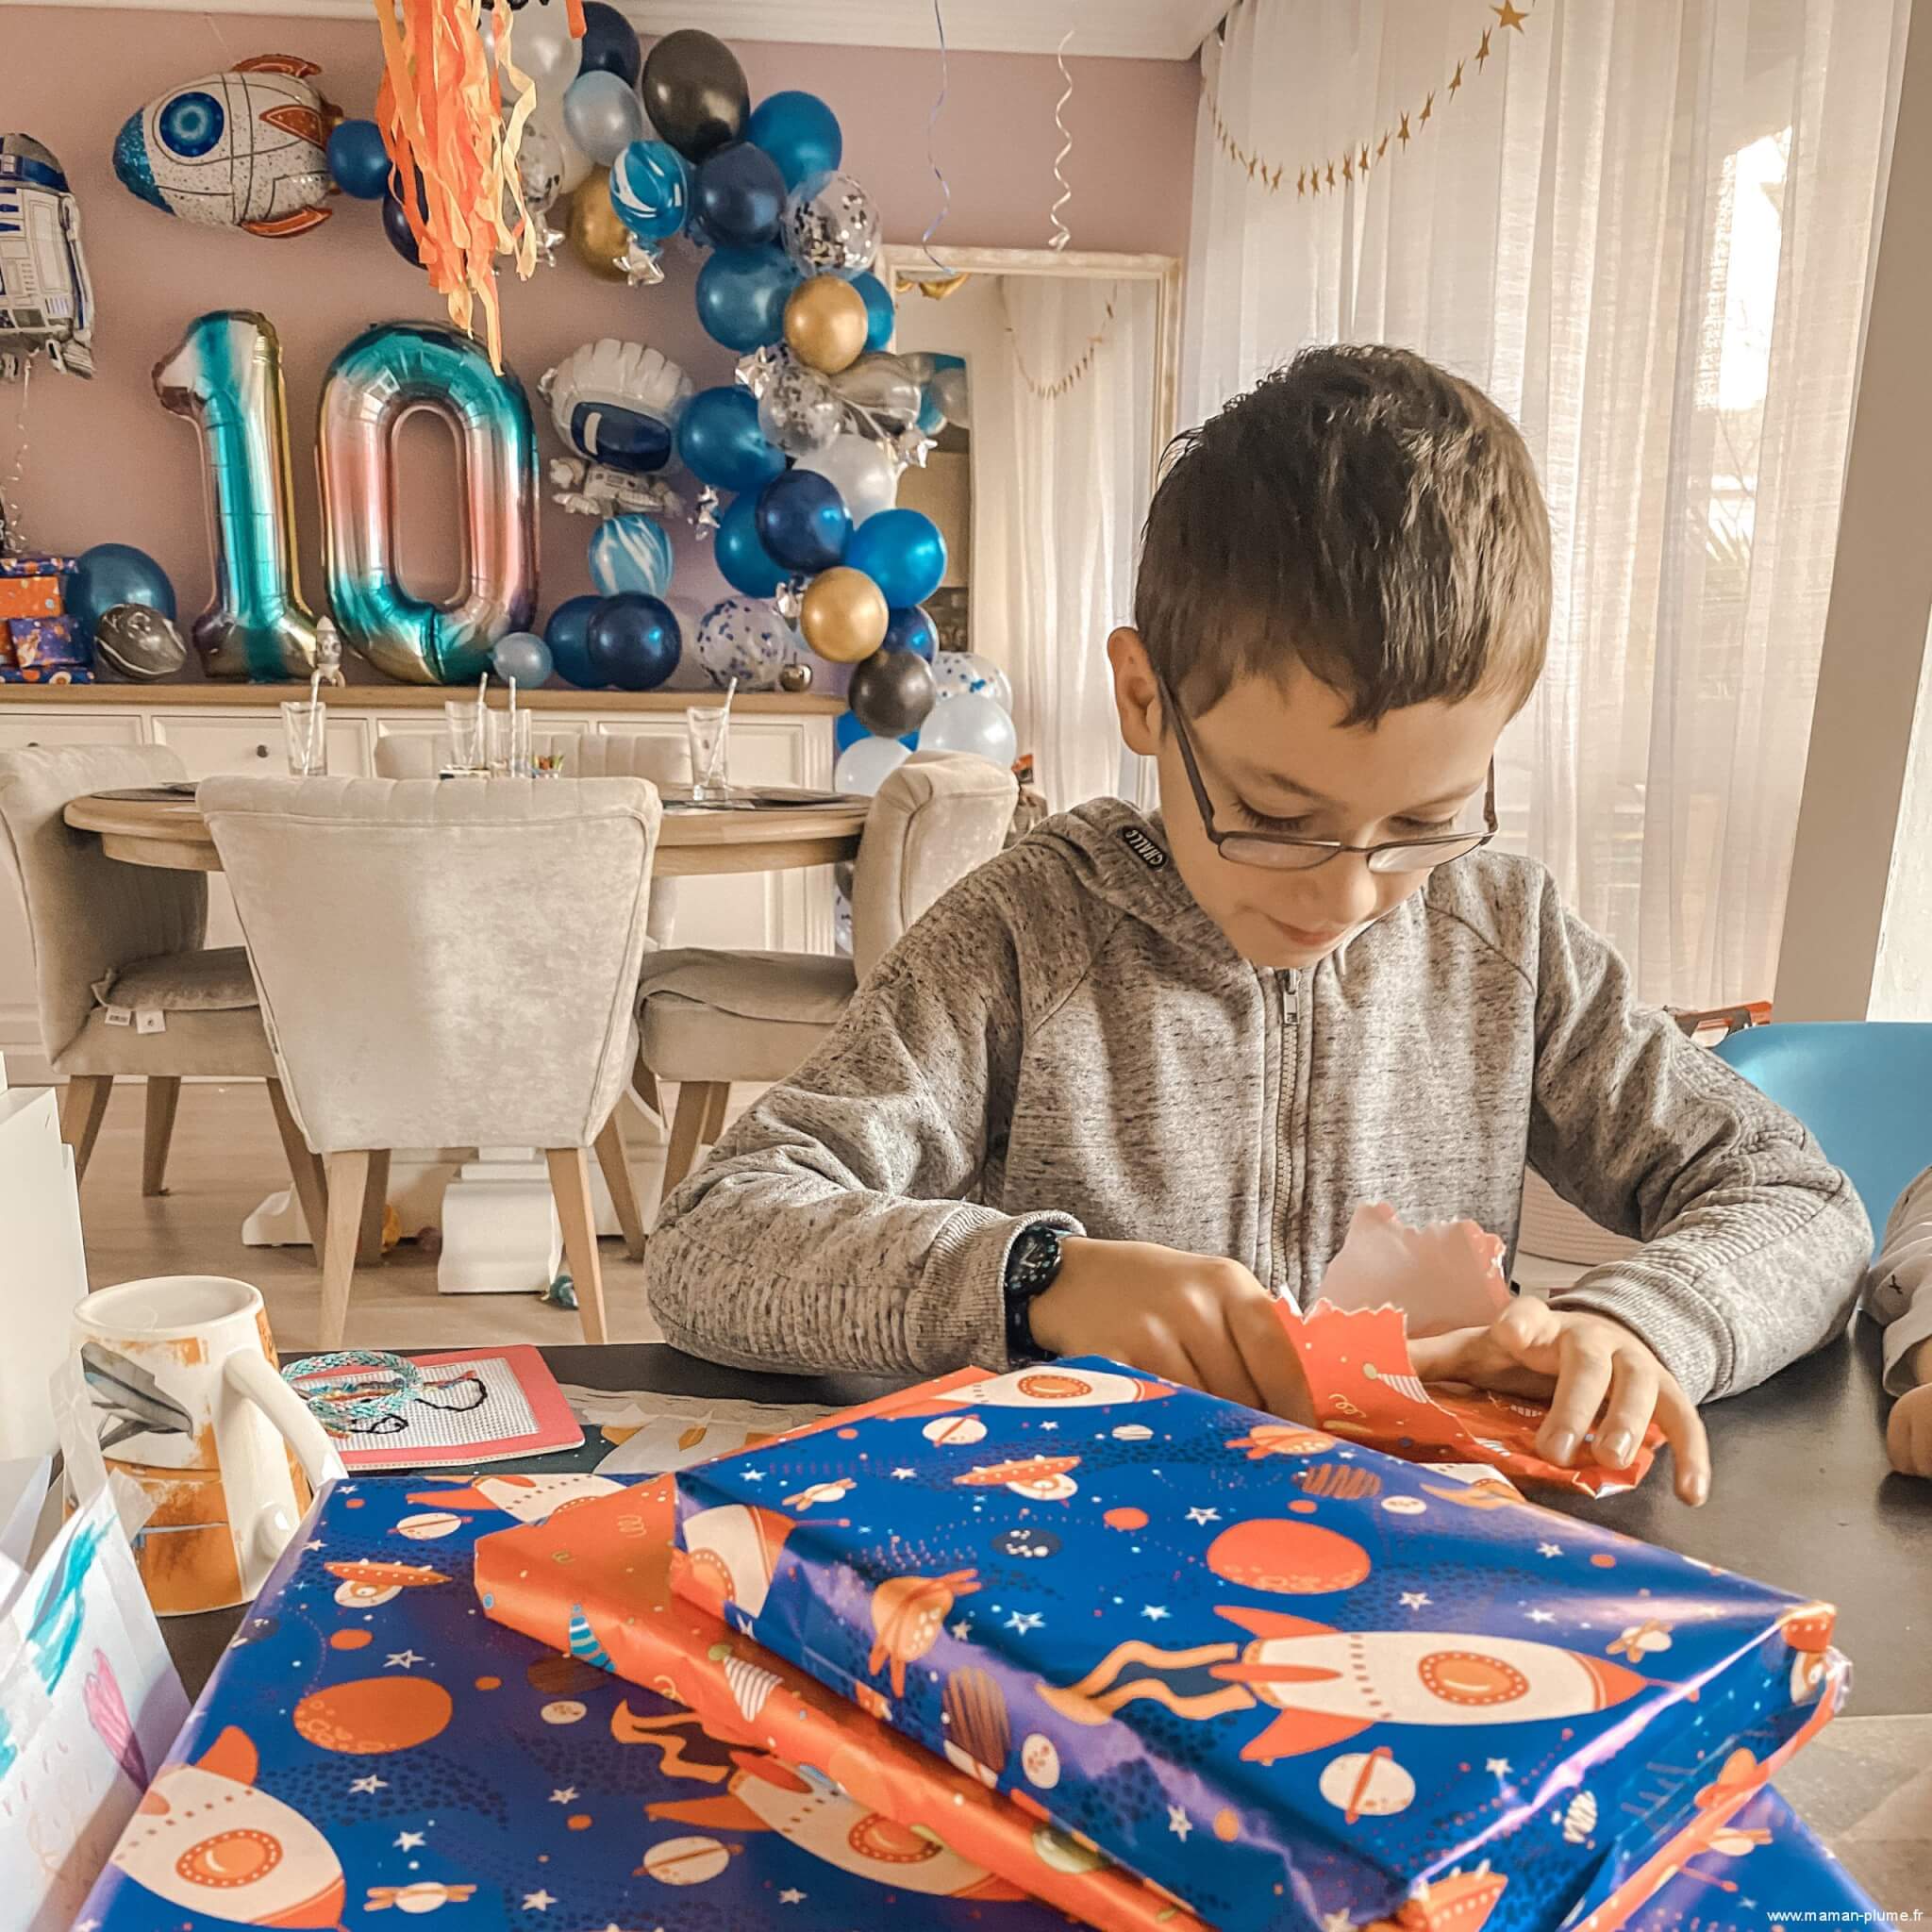 Quel cadeau d'anniversaire pour un garçon de 10 ans ?